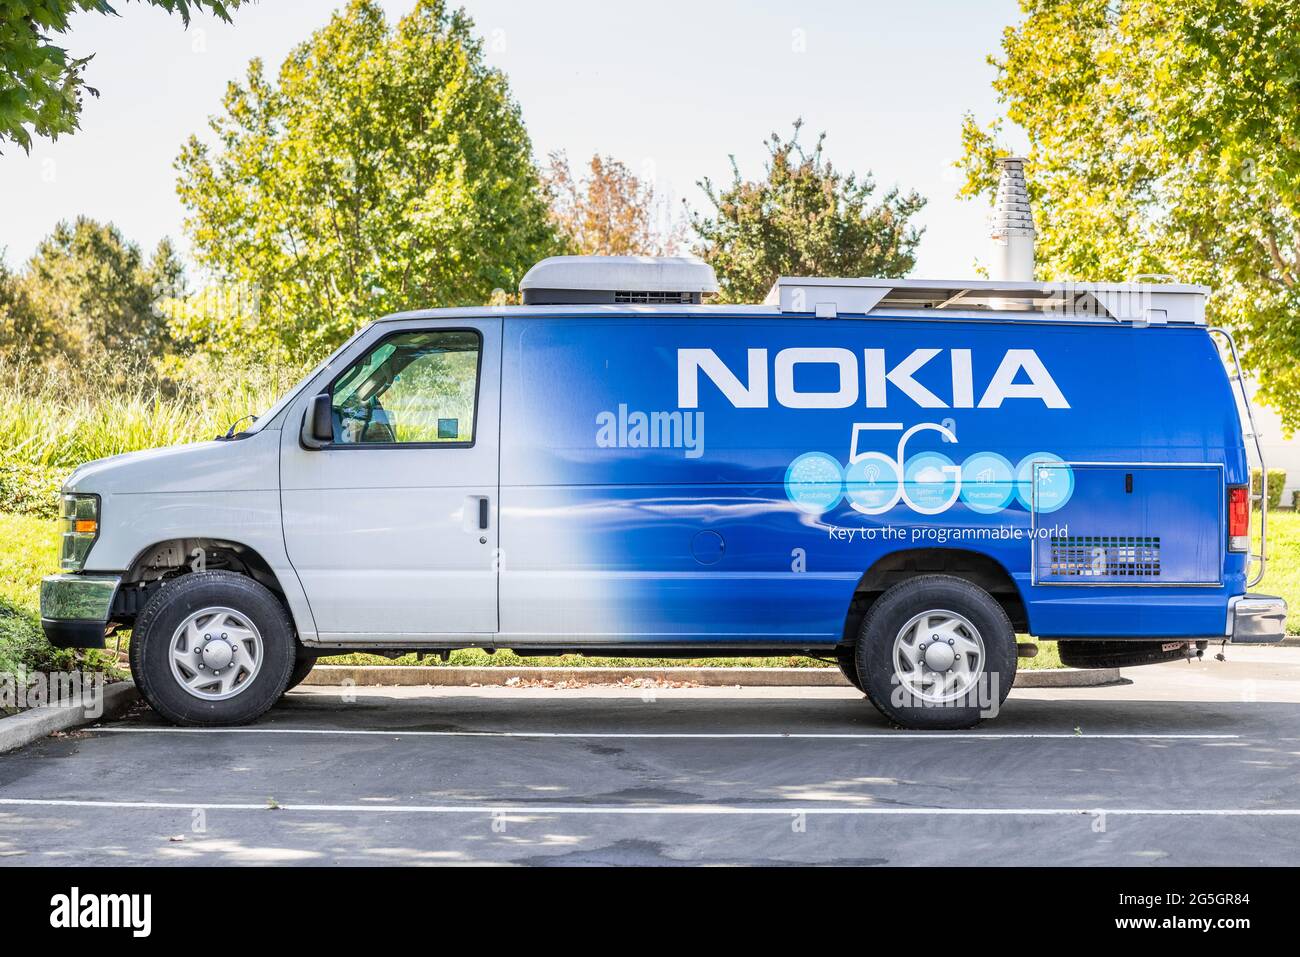 Sep 26, 2020 Mountain View / CA / USA - Nokia van marca con el logotipo 5G, estacionado en su campus de Silicon Valley; Nokia ofrece 5G servicios a MA Foto de stock